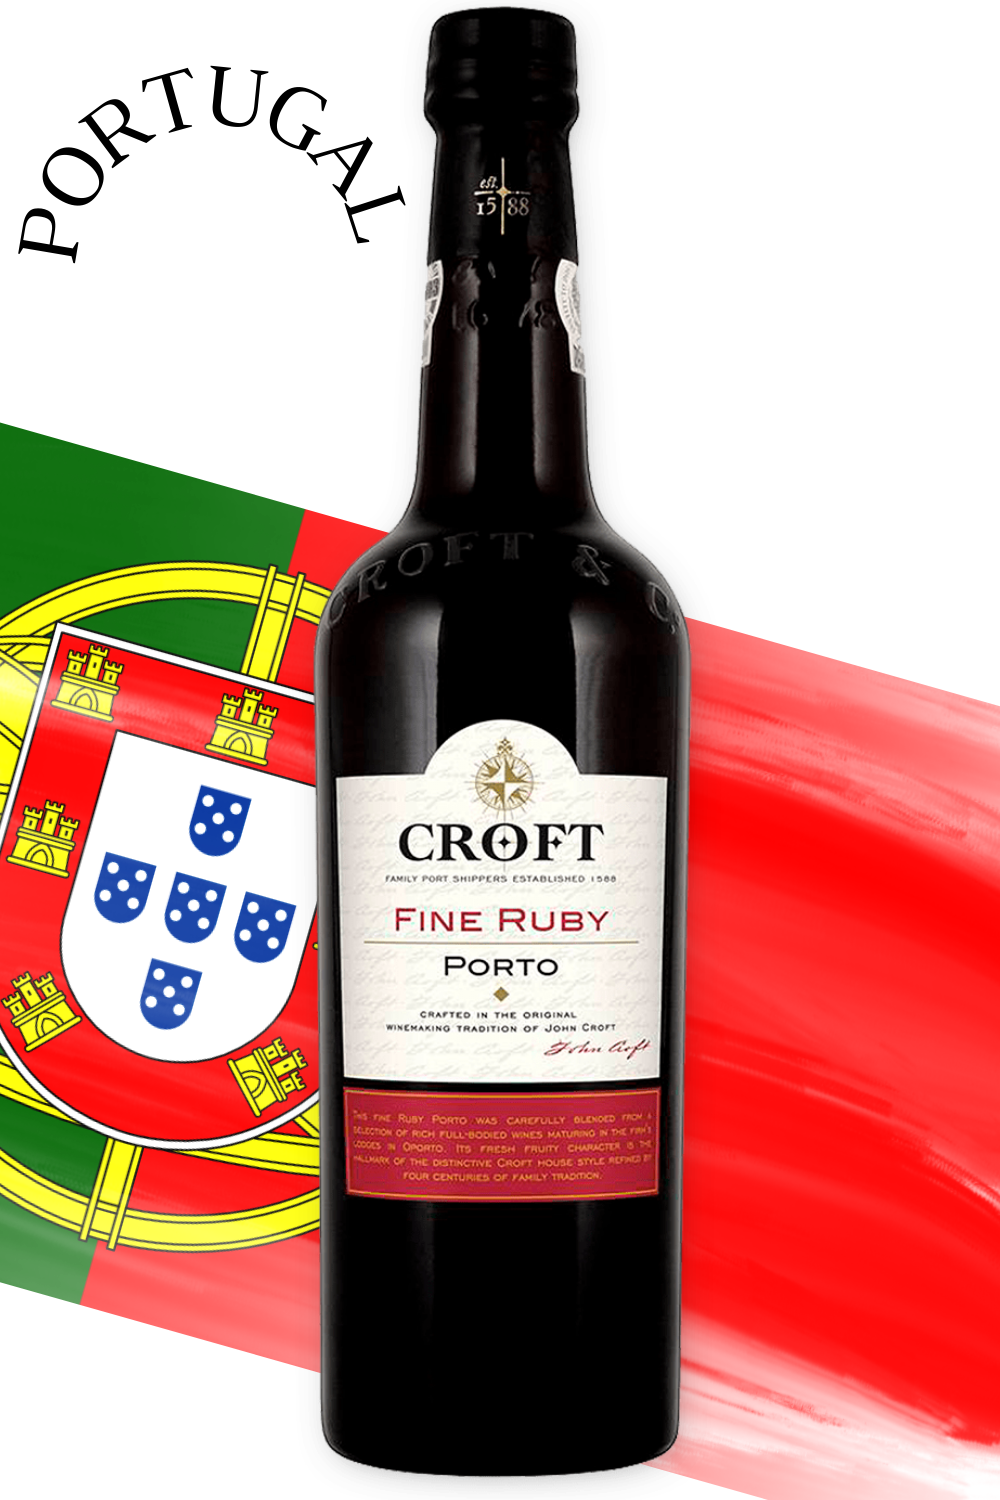 Vinho Do Porto Croft Fine Ruby - adegaalmeida.com.br - Adega Almeida